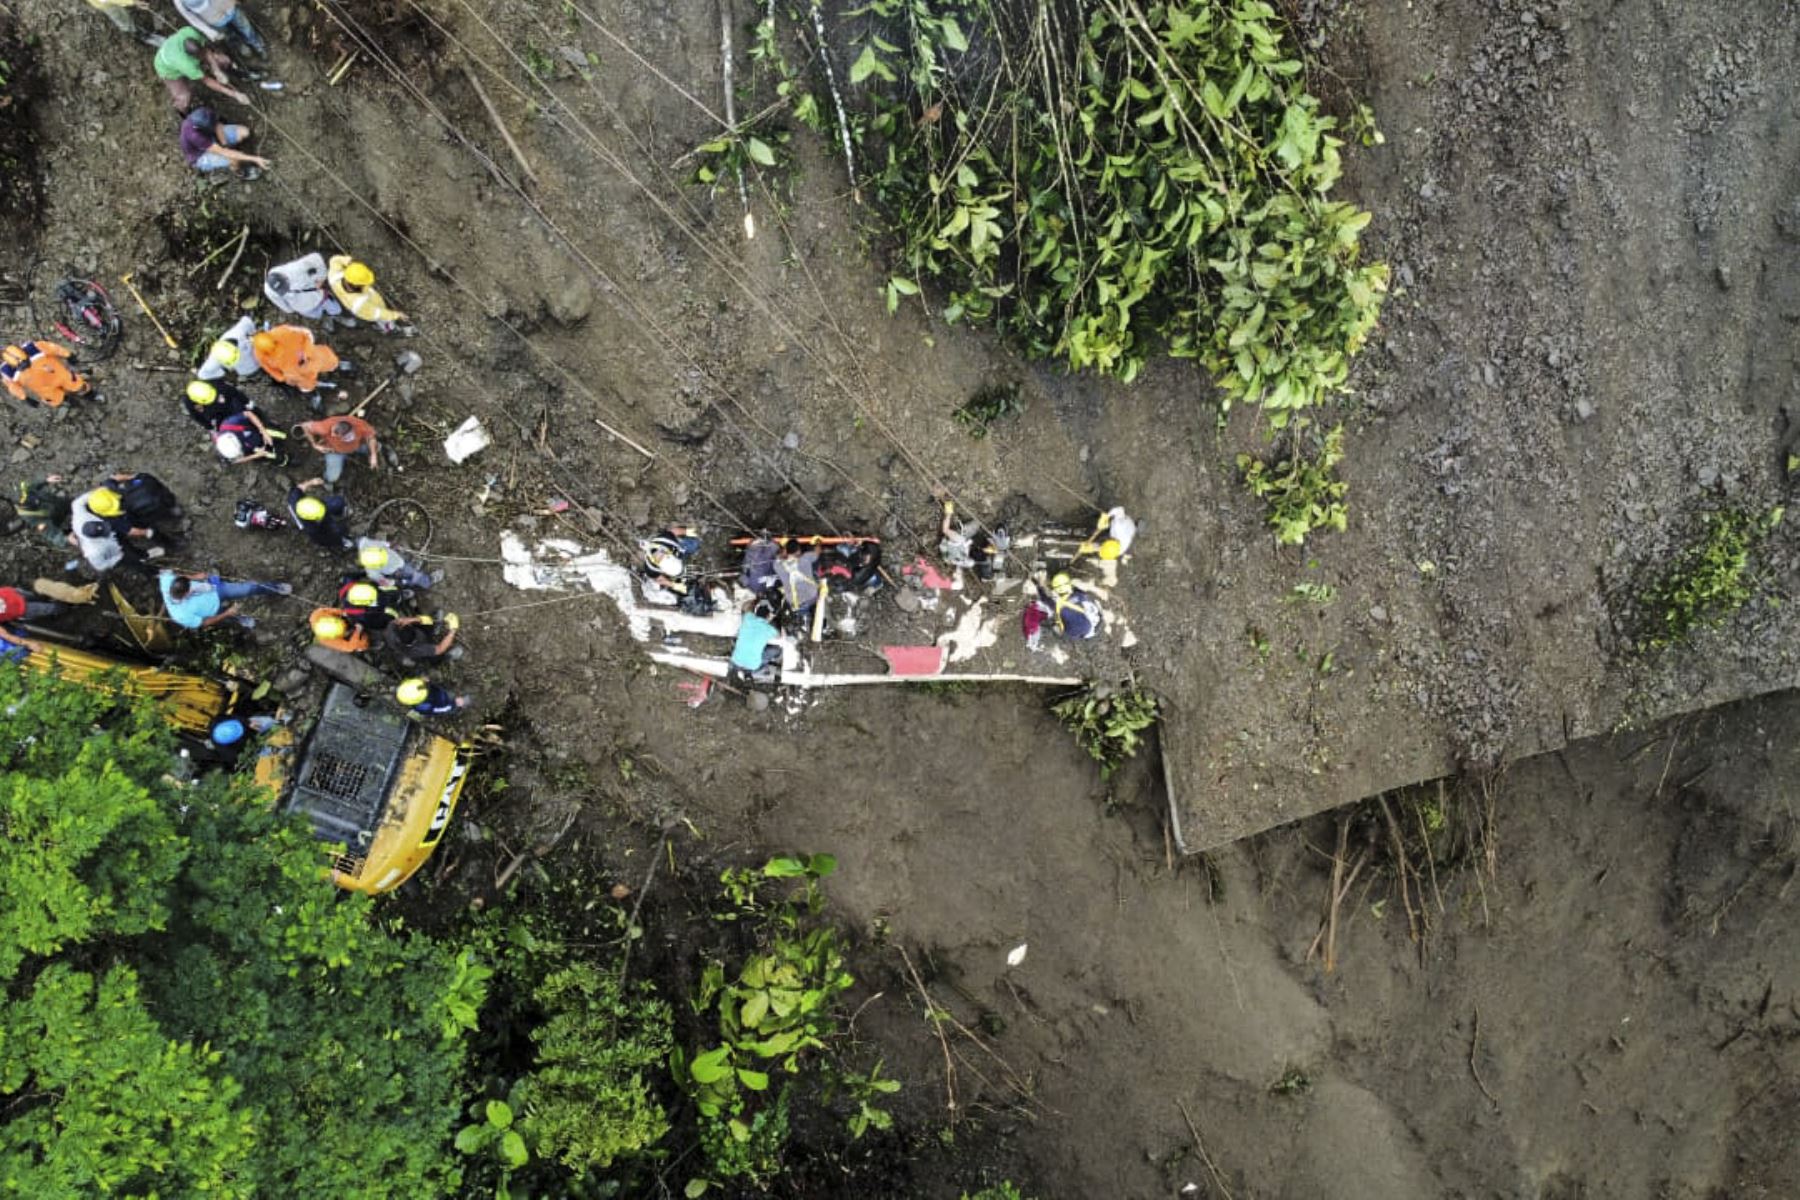 La cifra de fallecidos tras un deslizamiento de tierra en el departamento colombiano de Risaralda que sepultó un autobús ascendió a 33 personas, mientras que las labores de rescate prosiguen y podrían encontrarse nuevos cuerpos, informó este lunes el Gobierno colombiano.